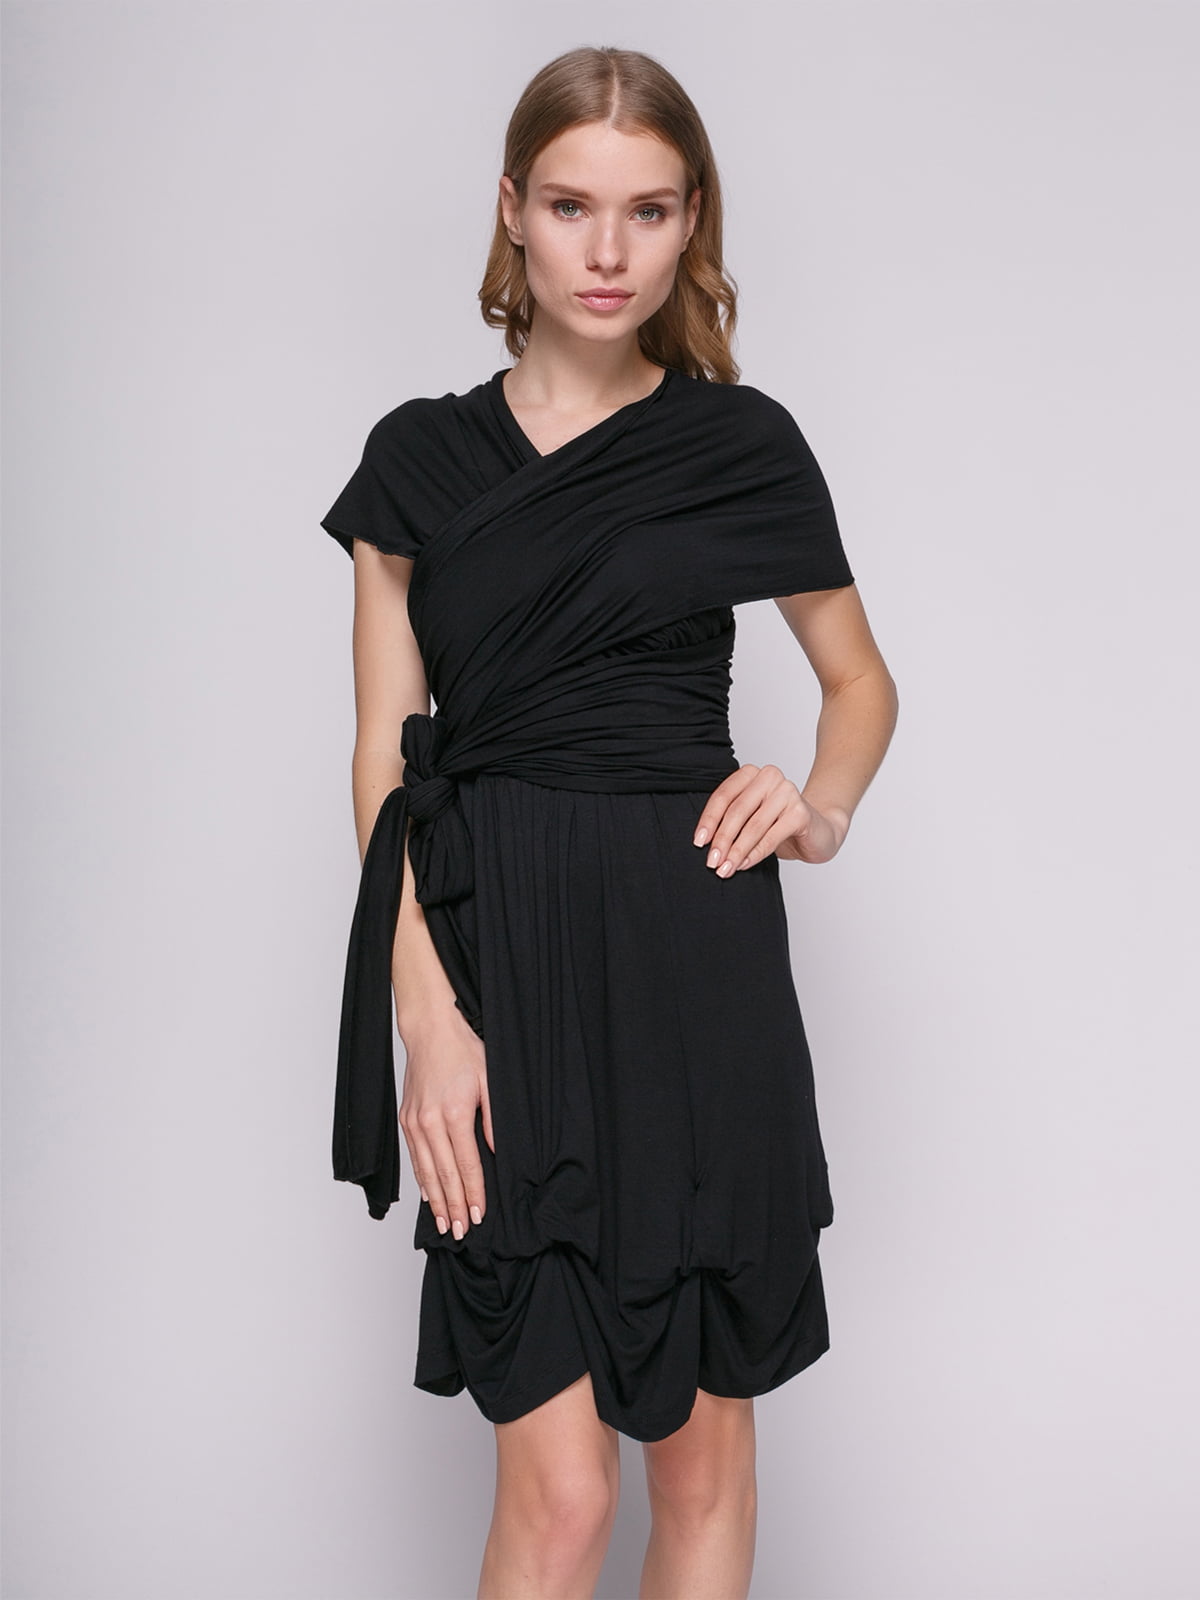 Платье черное с драпировкой | 434146